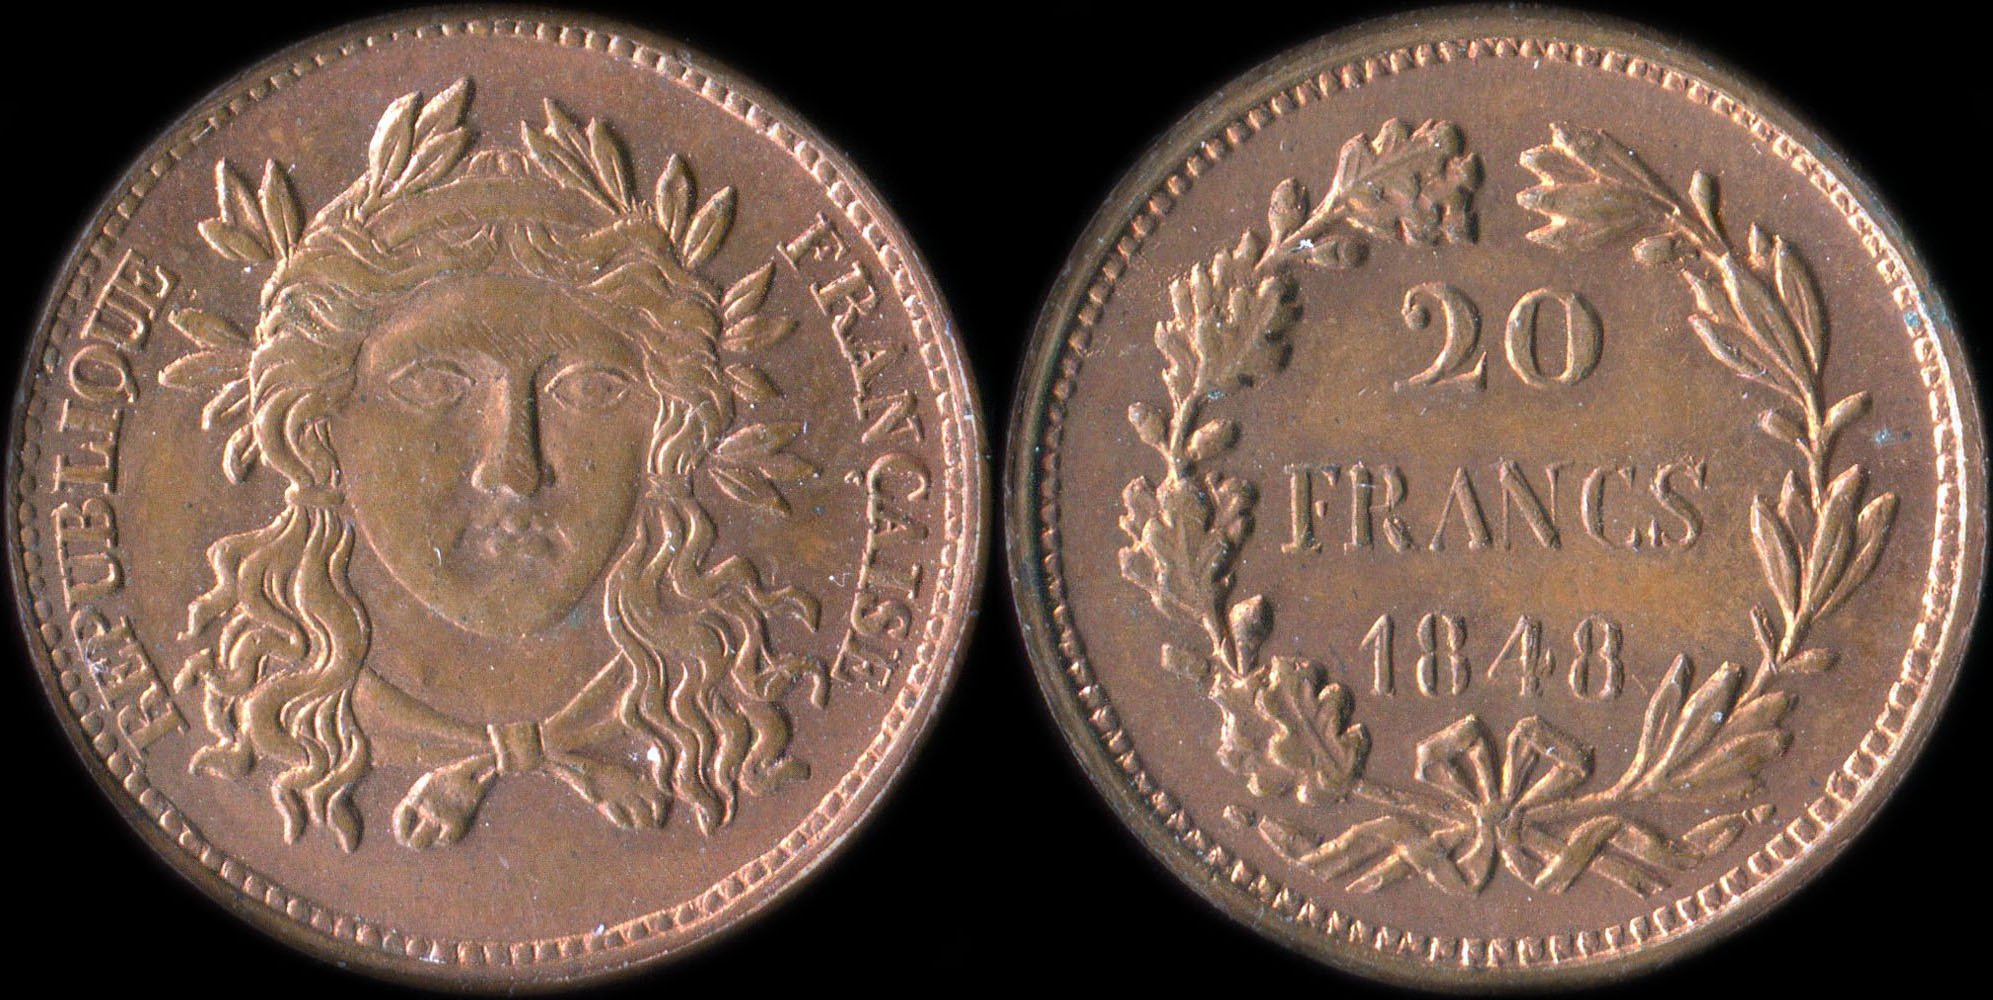 Pice de 20 francs 1848 - 2me Concours de Gayrard - cuivre